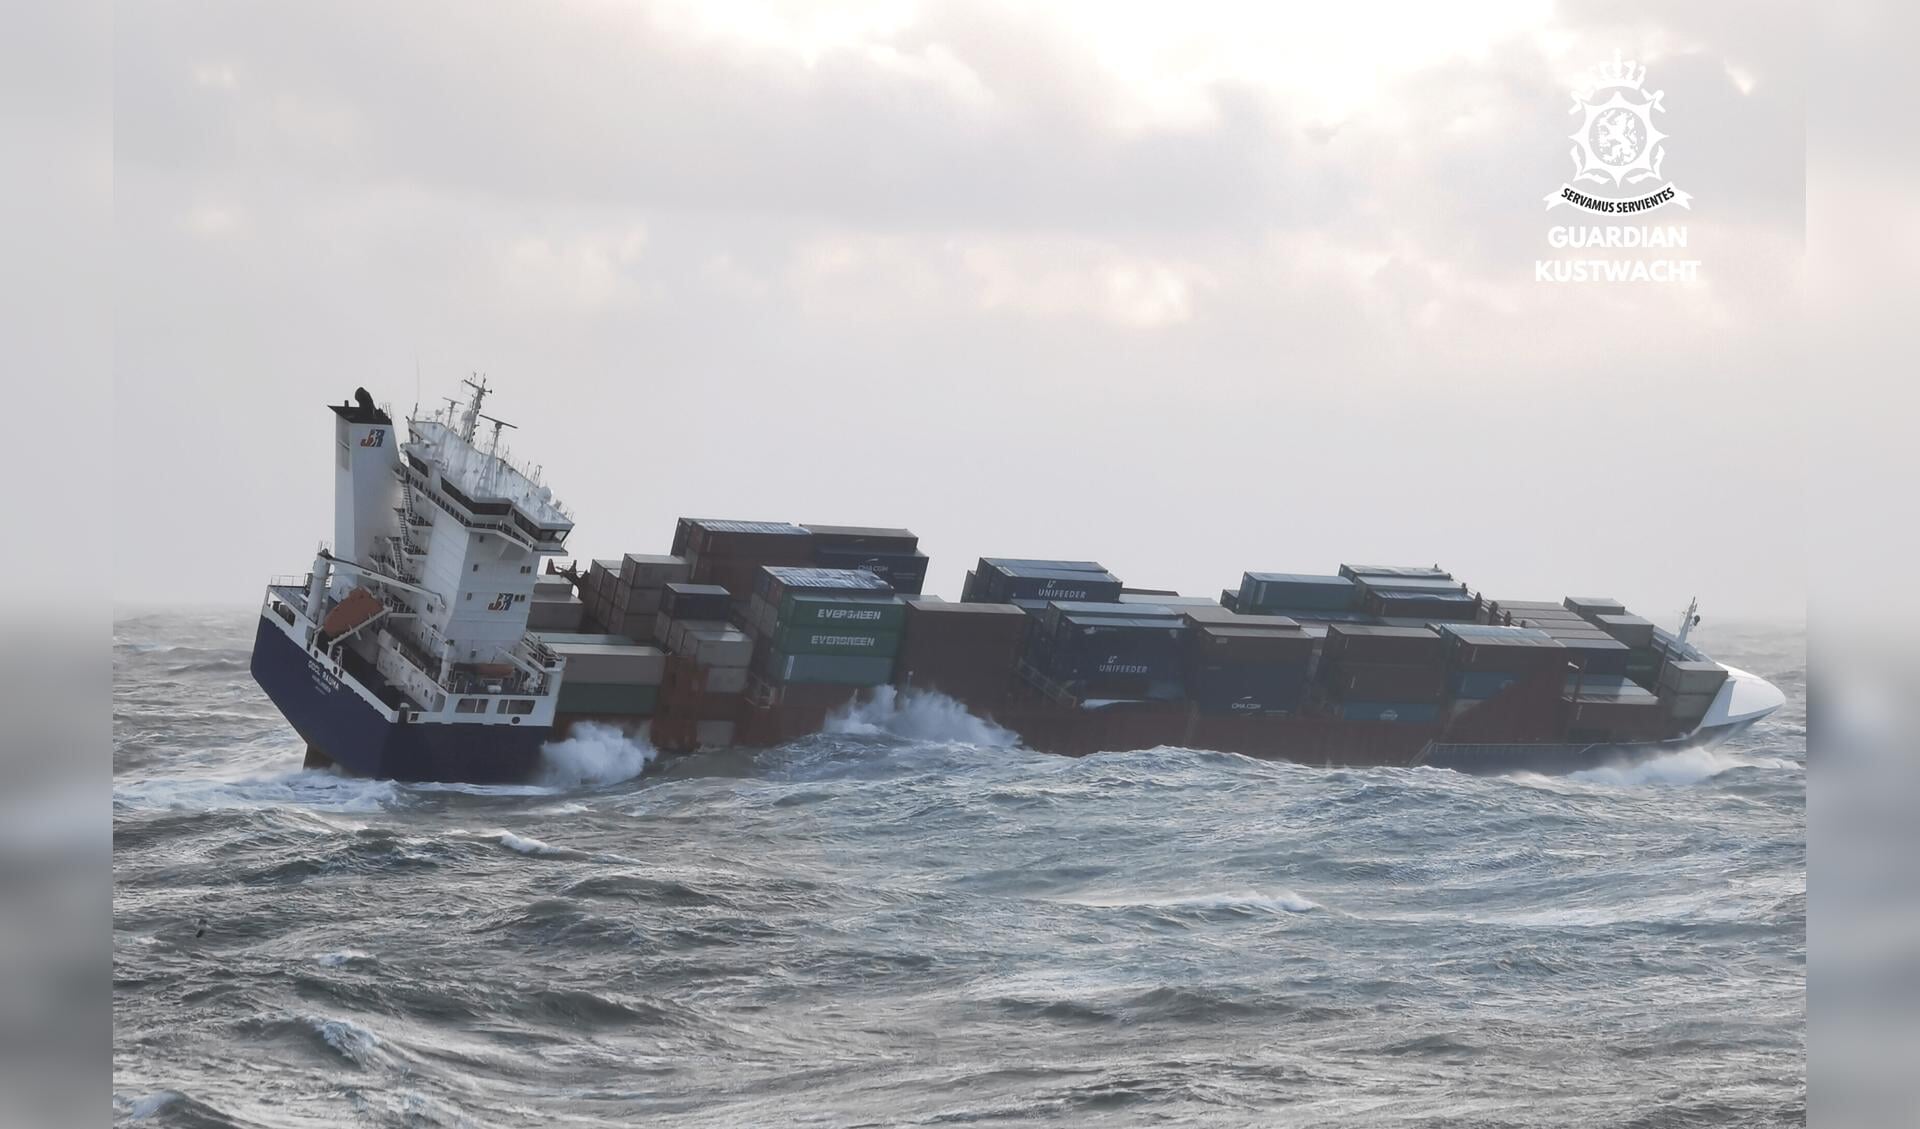 De OOCL Rauma in de storm op zee.